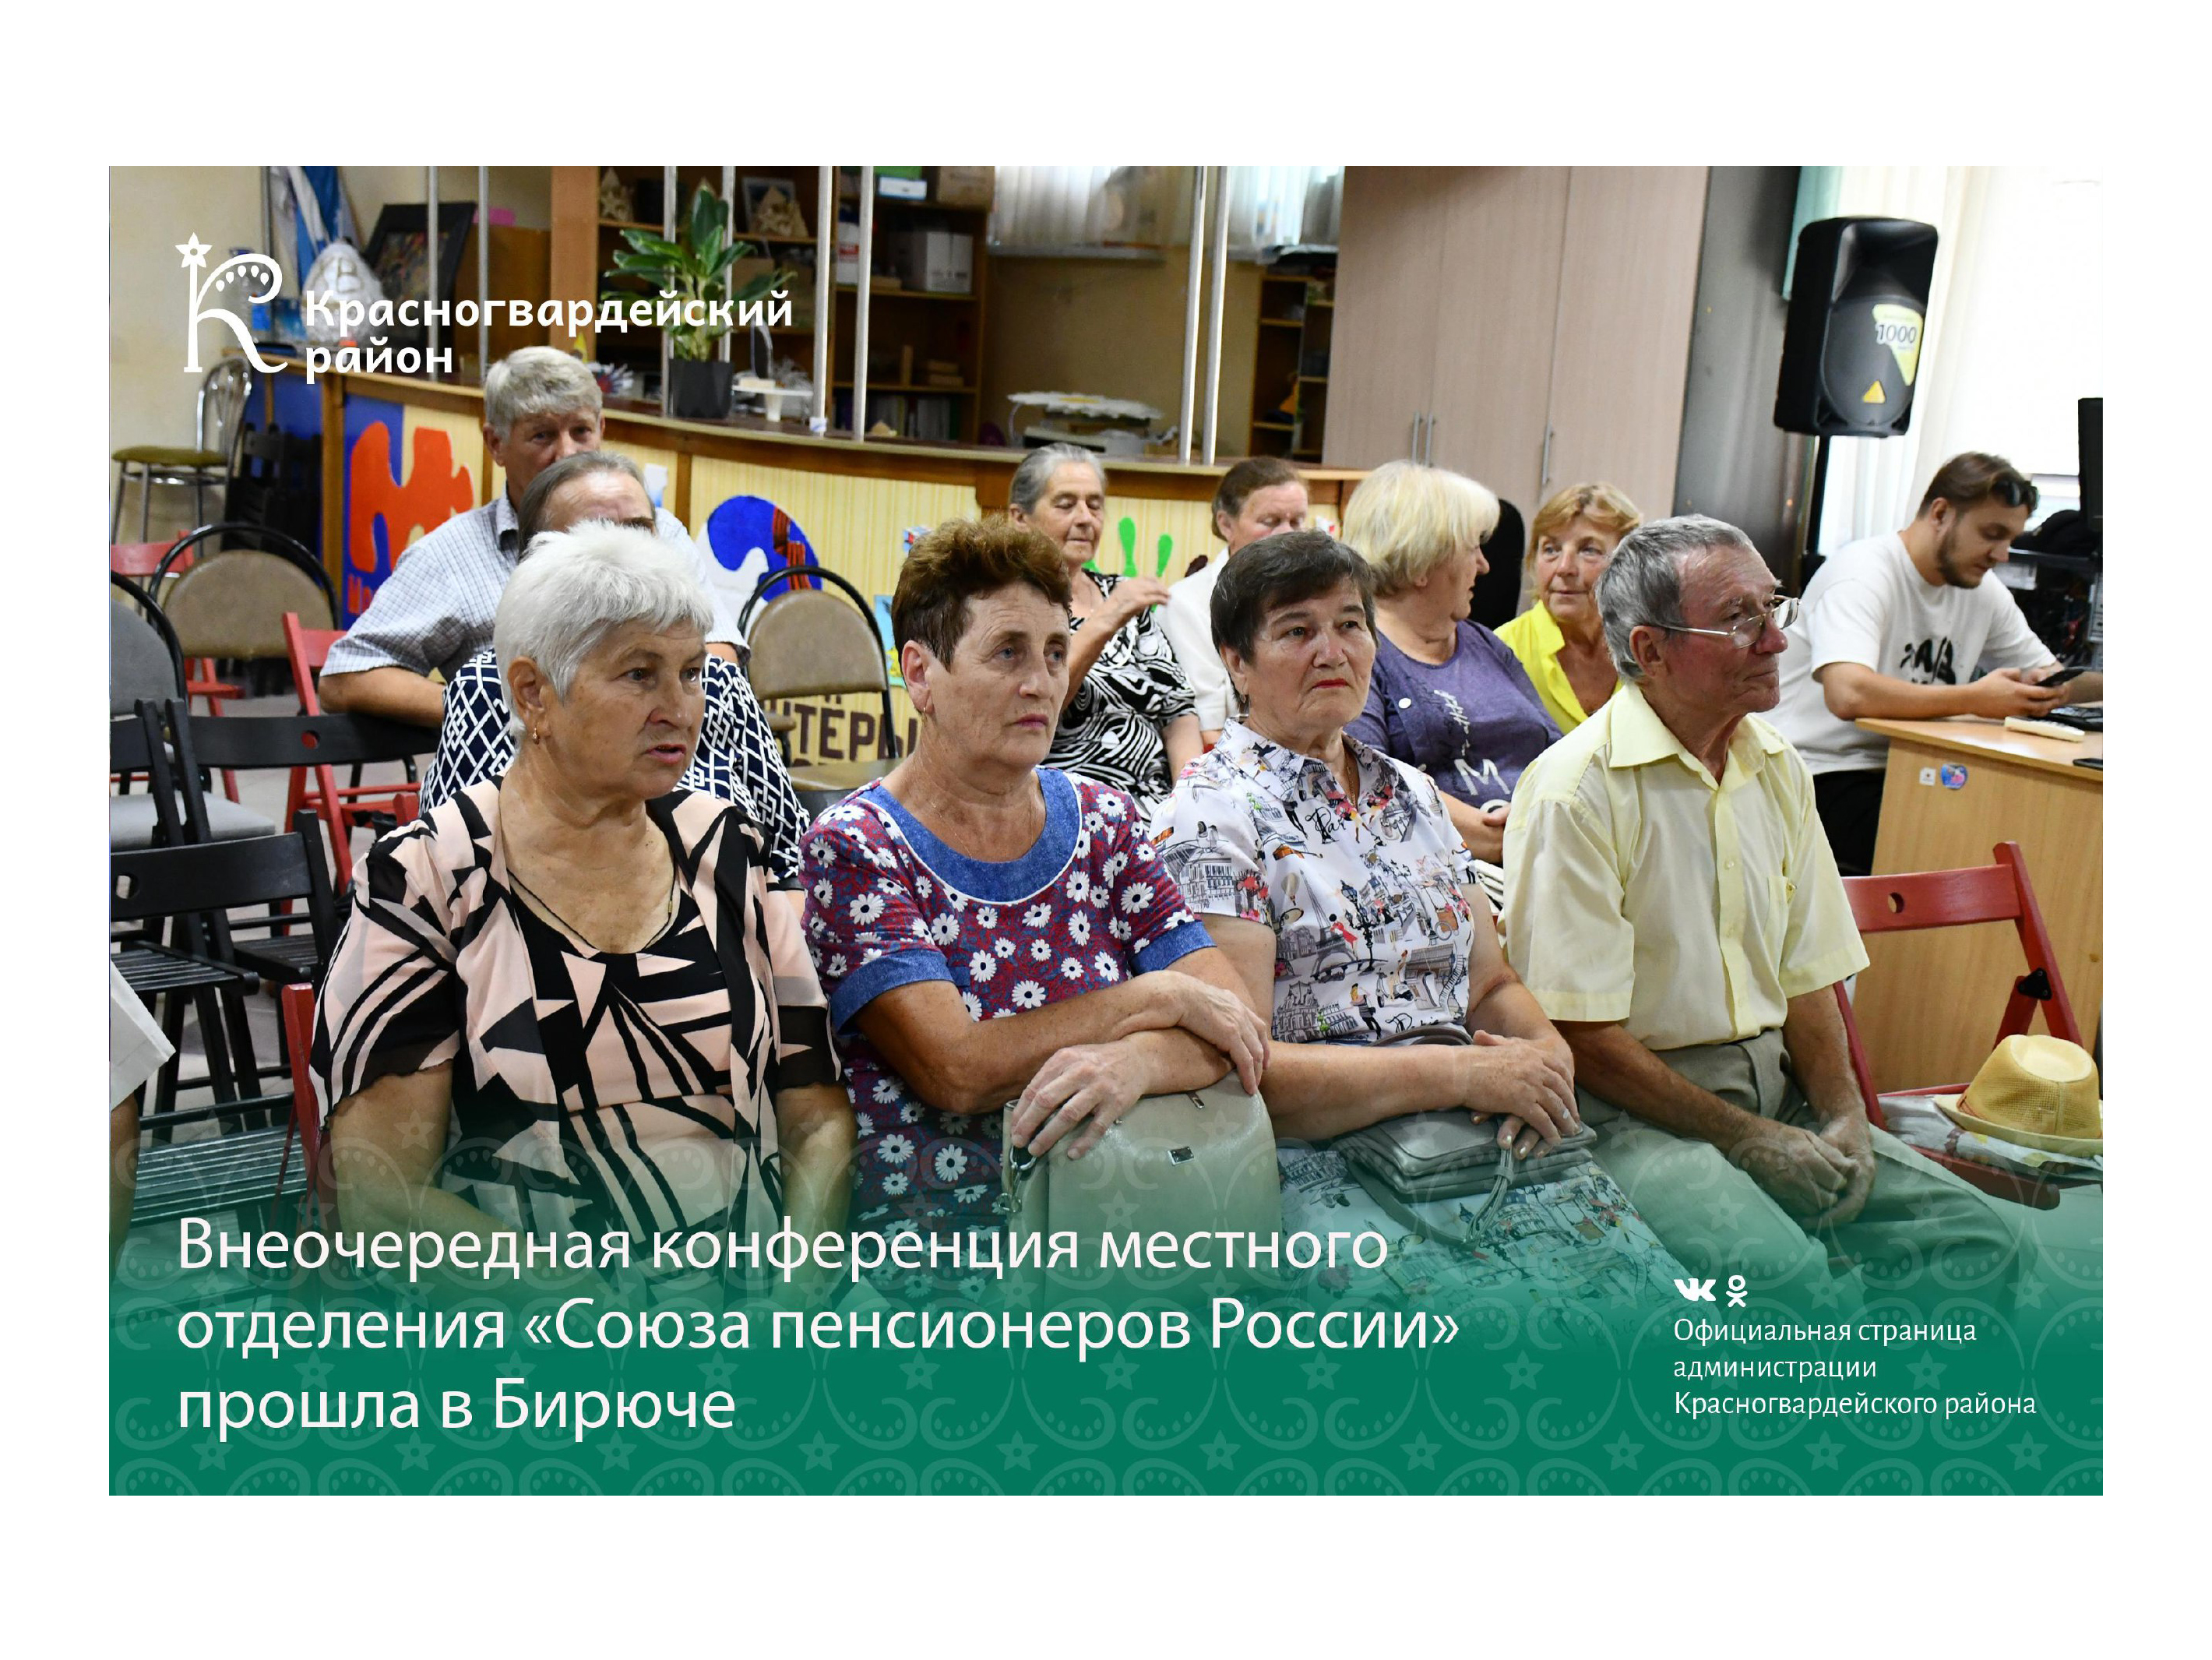 Внеочередная конференция местного отделения «Союза пенсионеров России» прошла в Бирюче.